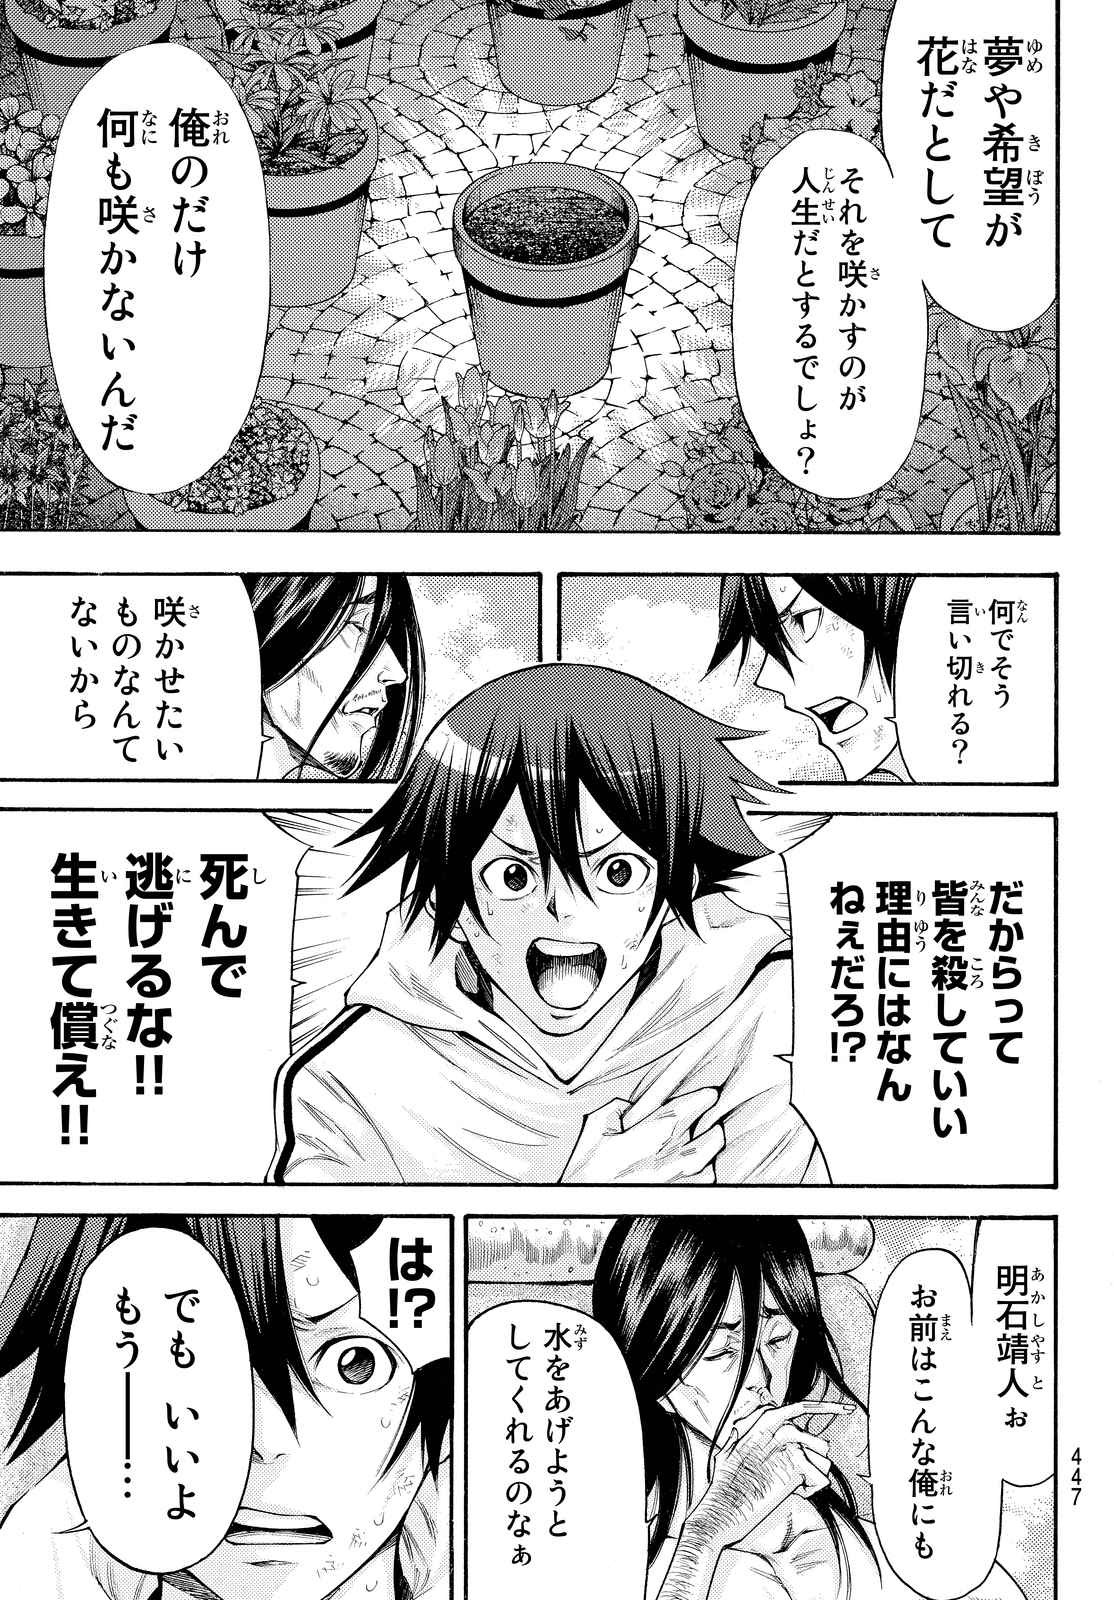 Kamisama no Ituori - Chapter 156 - Page 3